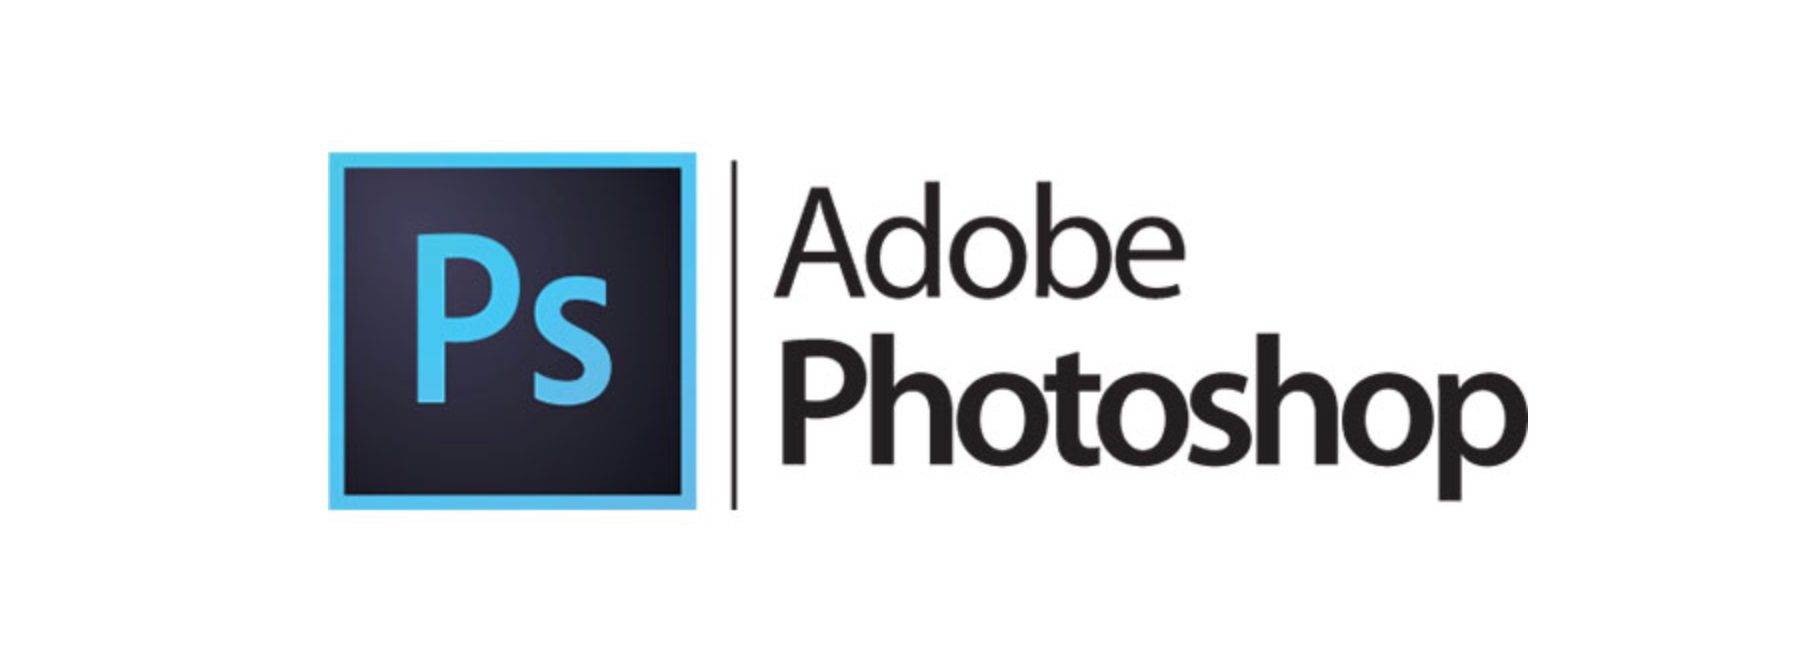 adobe-photoshop5e20195ephotoshop-logo-2108630